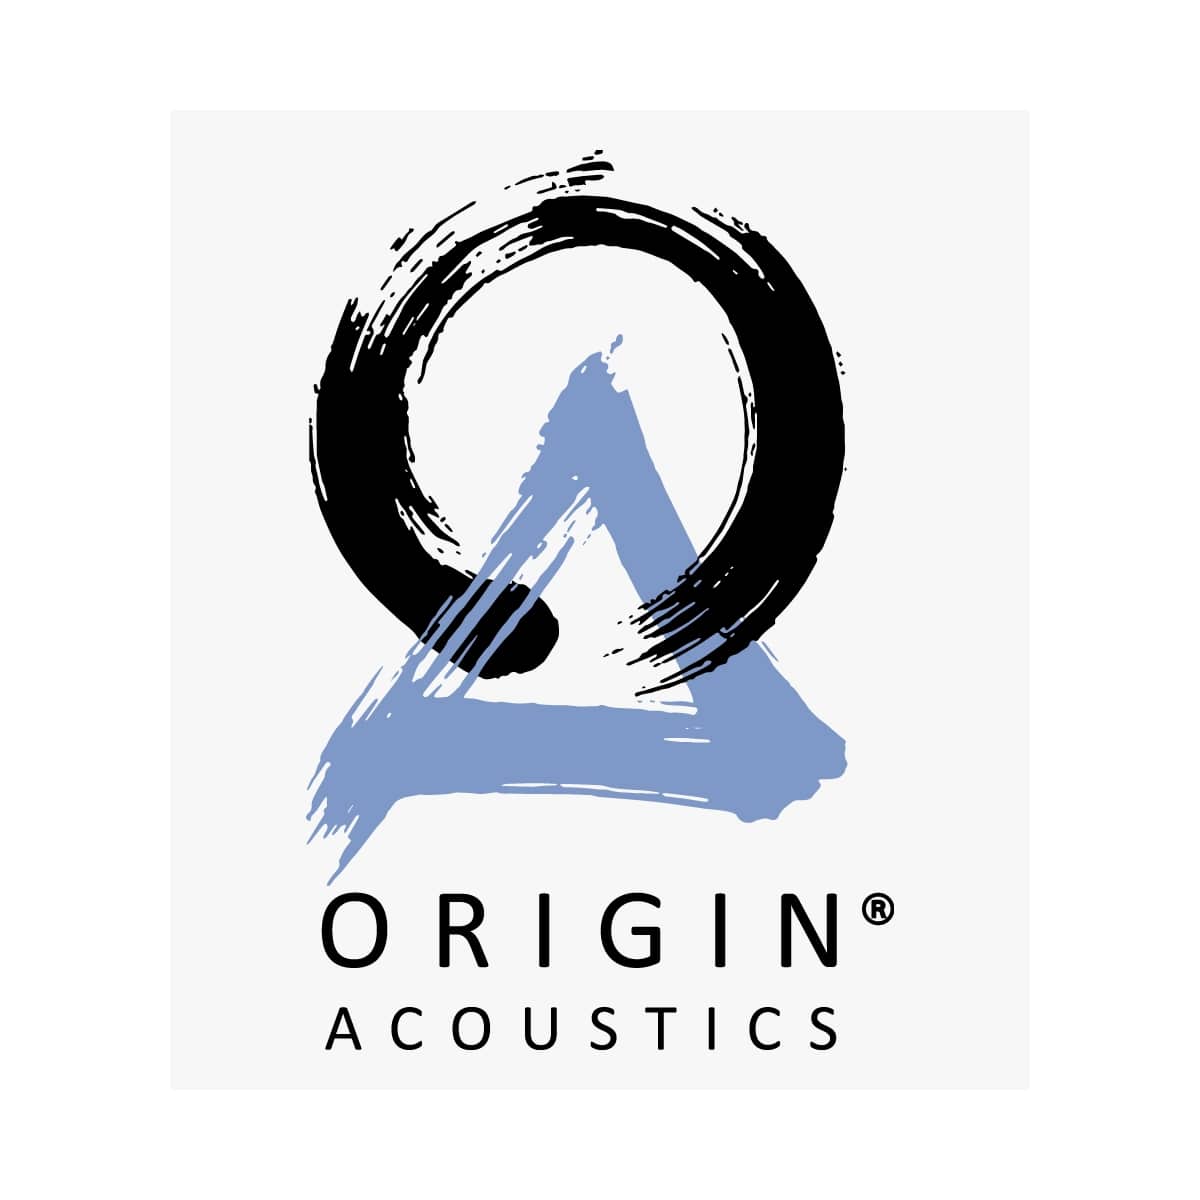 ORIGIN Acoustics